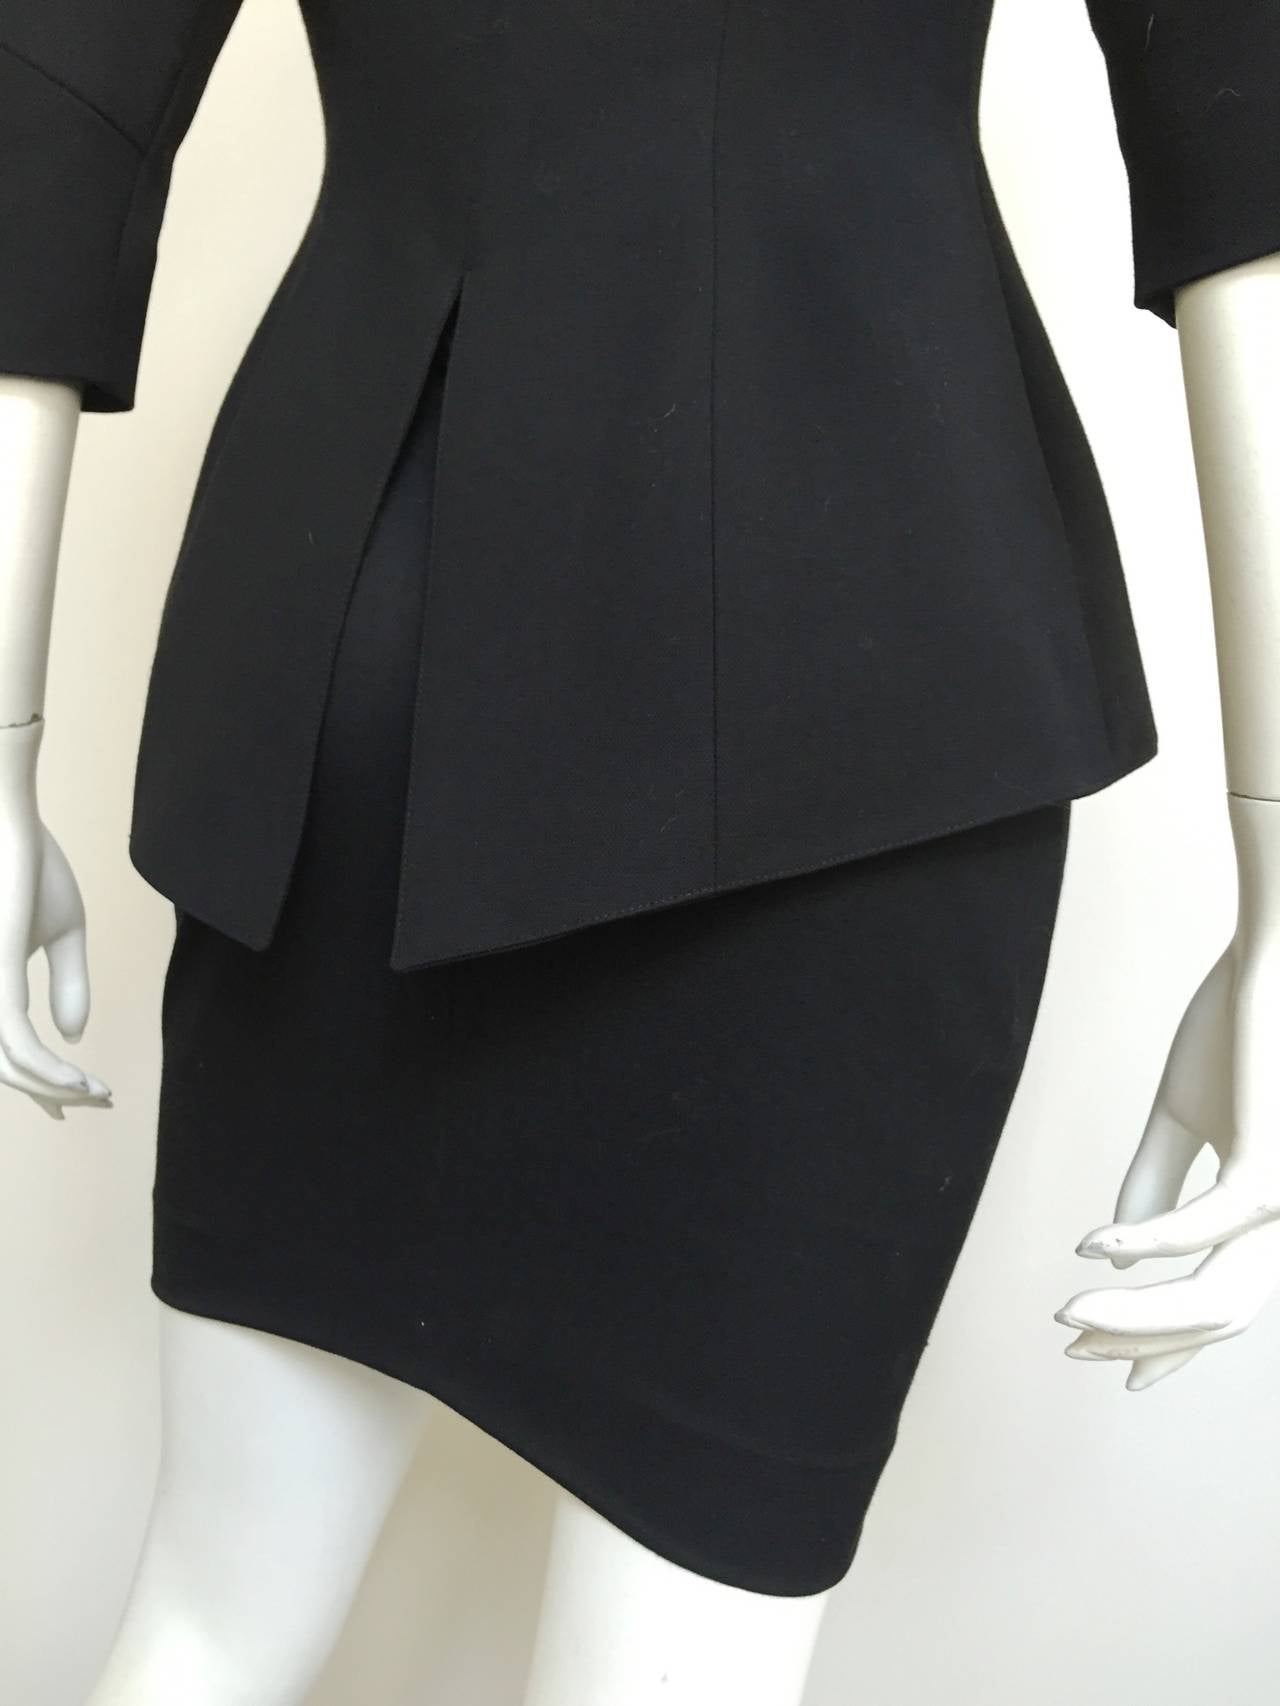 Lolita Lempicka Paris 80s black skirt suit size 4. 3